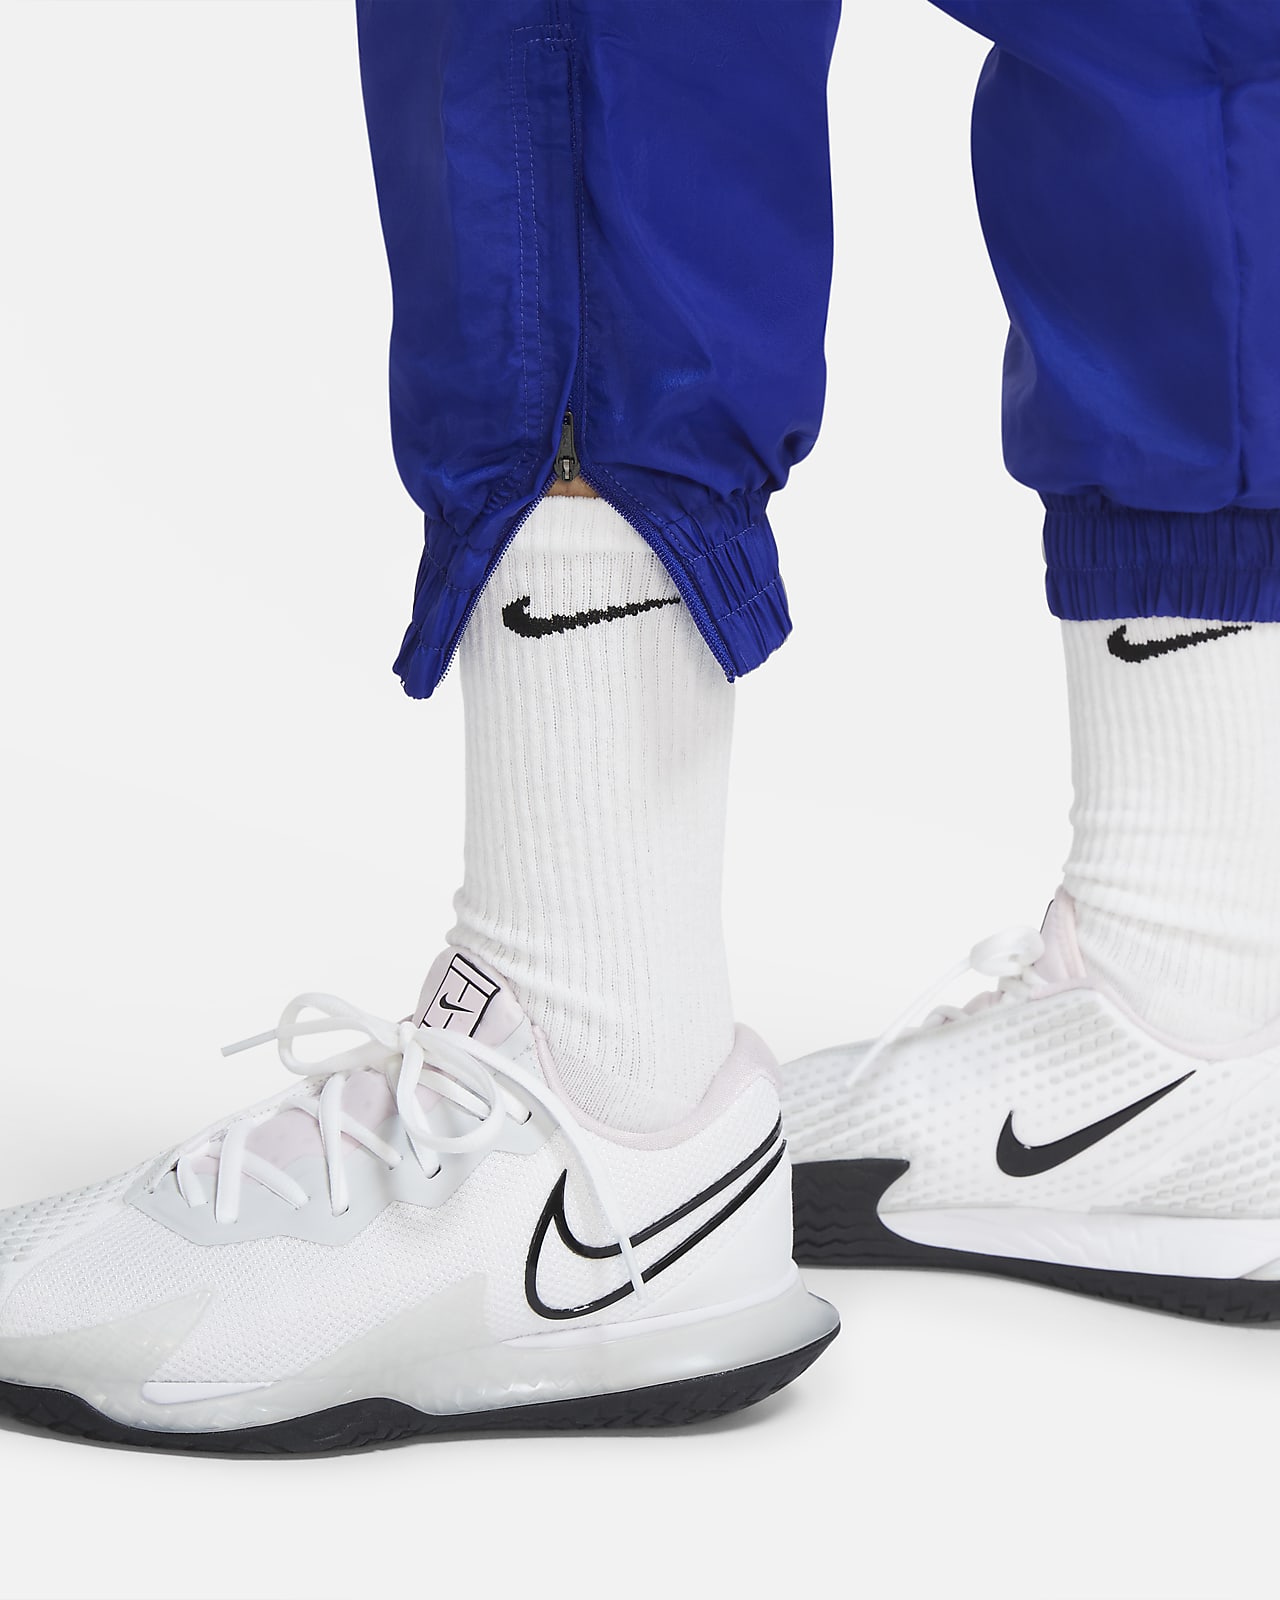 Nike NikeCourt Tennis Pants White